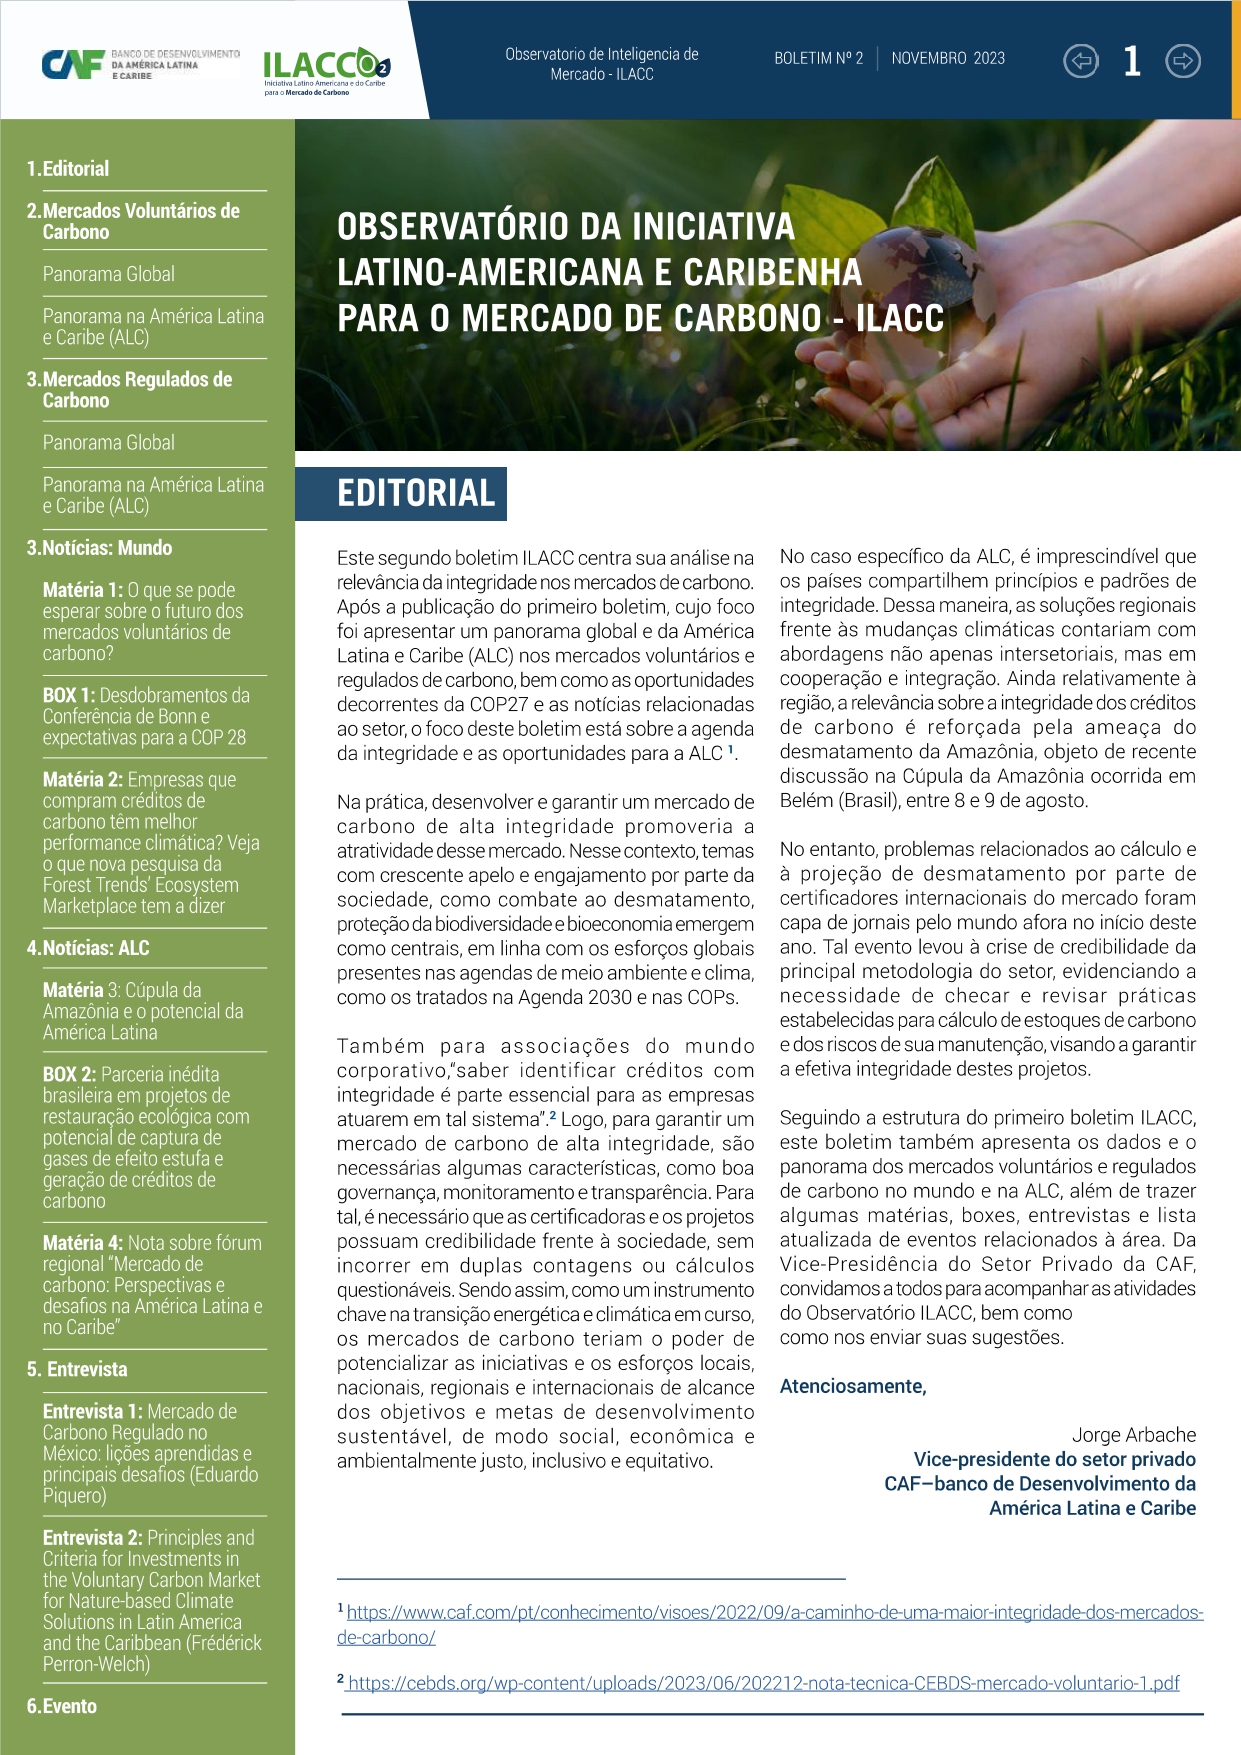 Boletim 2 - Observatório da iniciativa latino-americana e caribenha para o mercado de carbono - ILACC